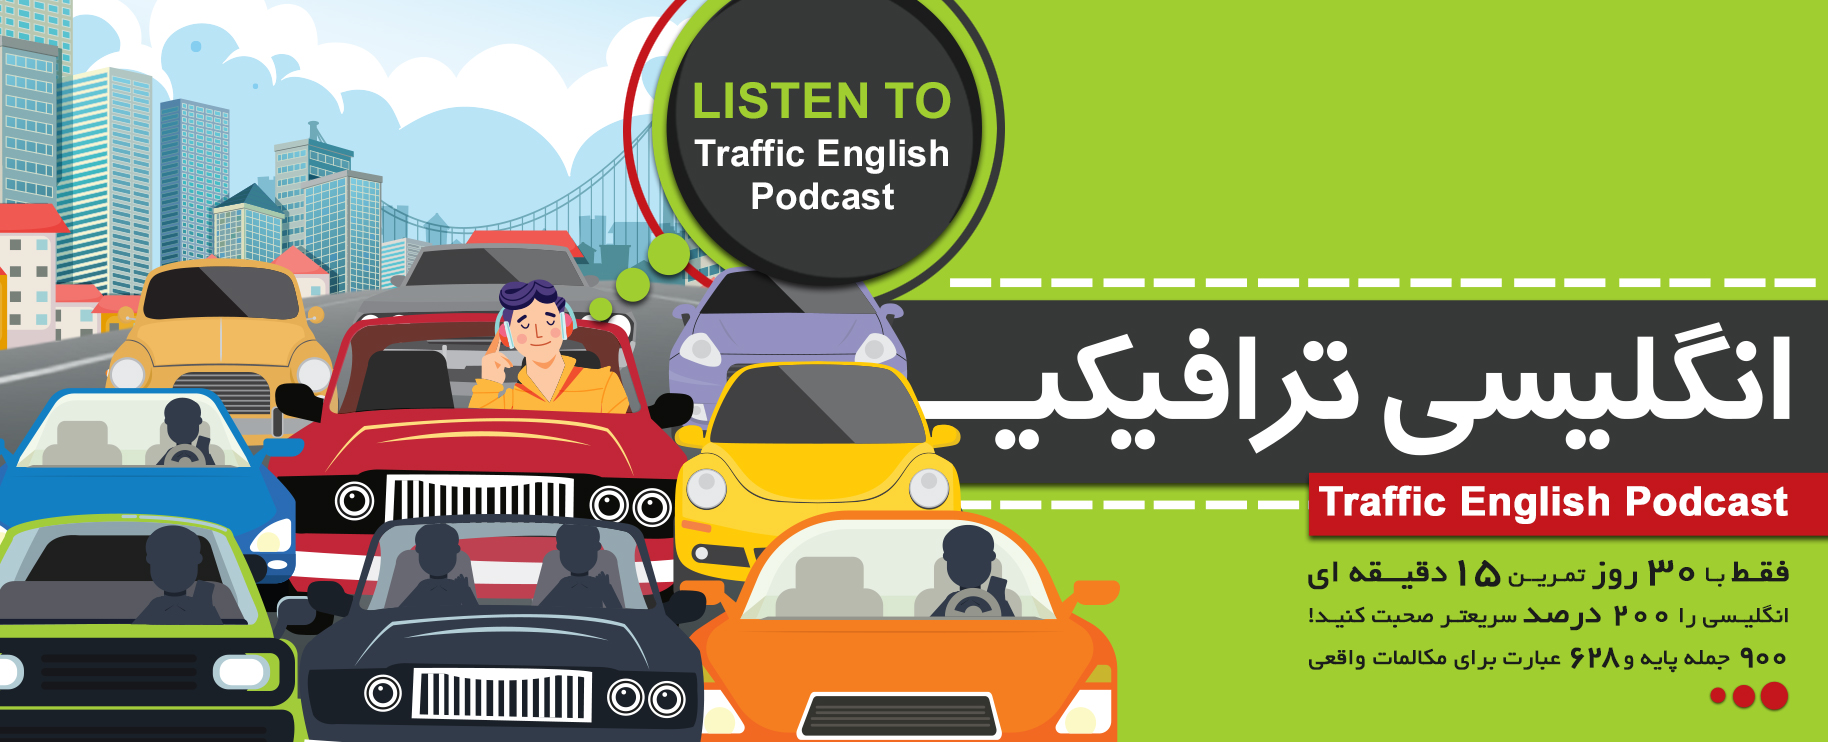 انگلیسی ترافیکی